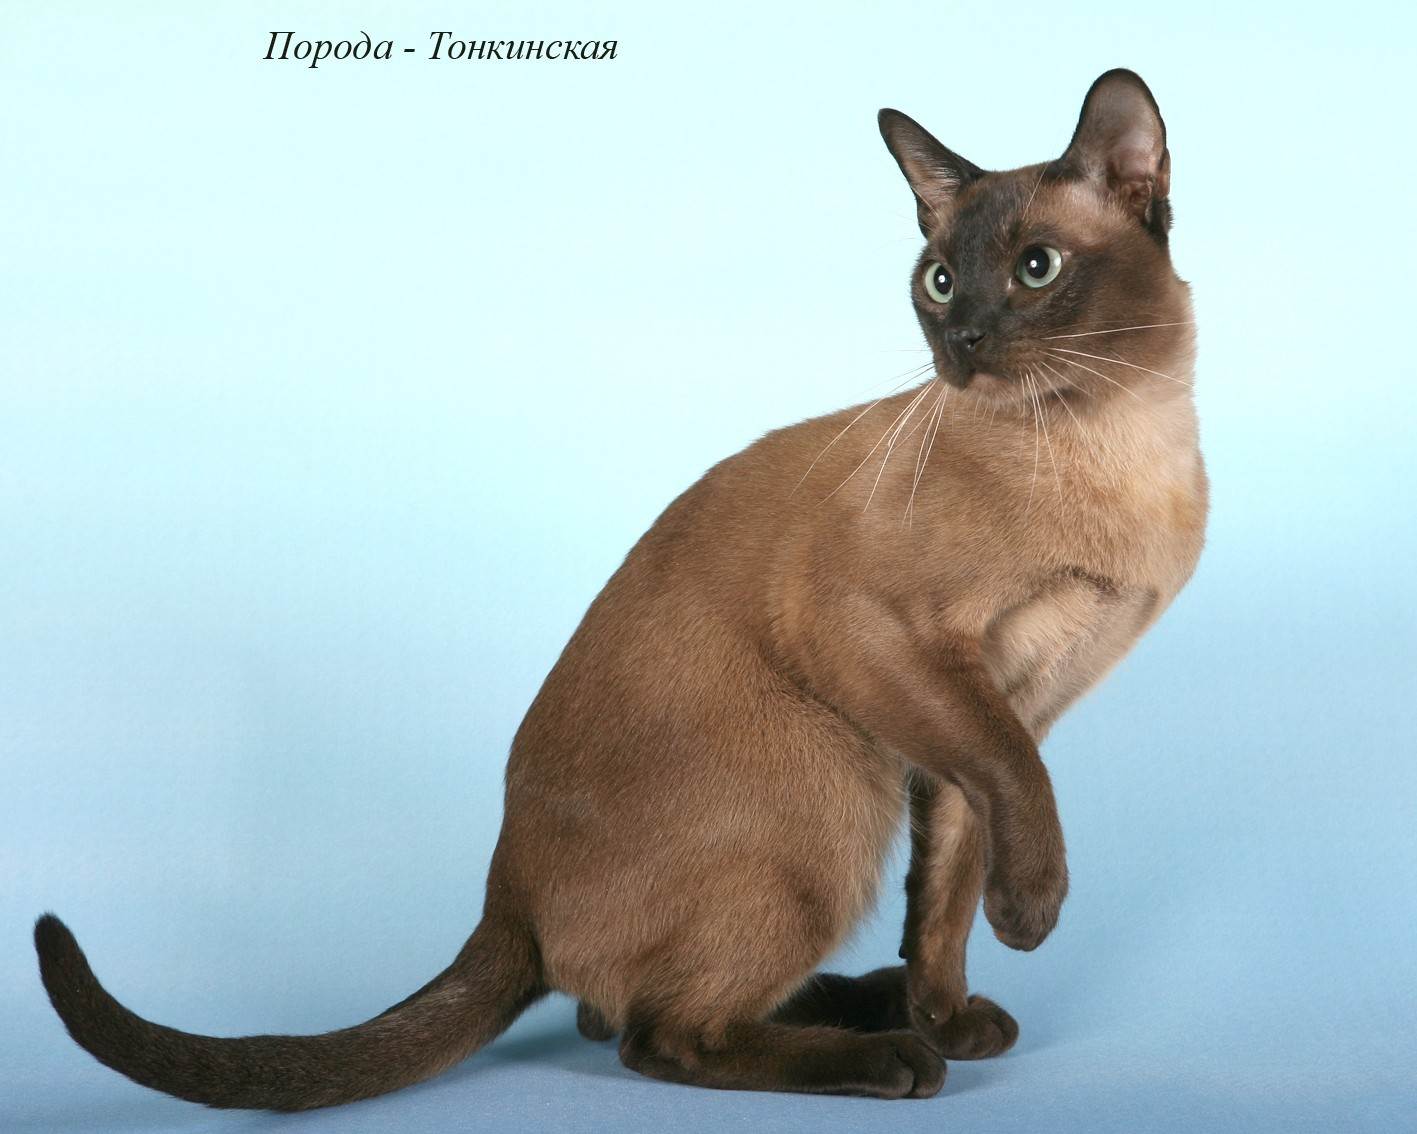 Тонкинская кошка: описание породы кошек, цена